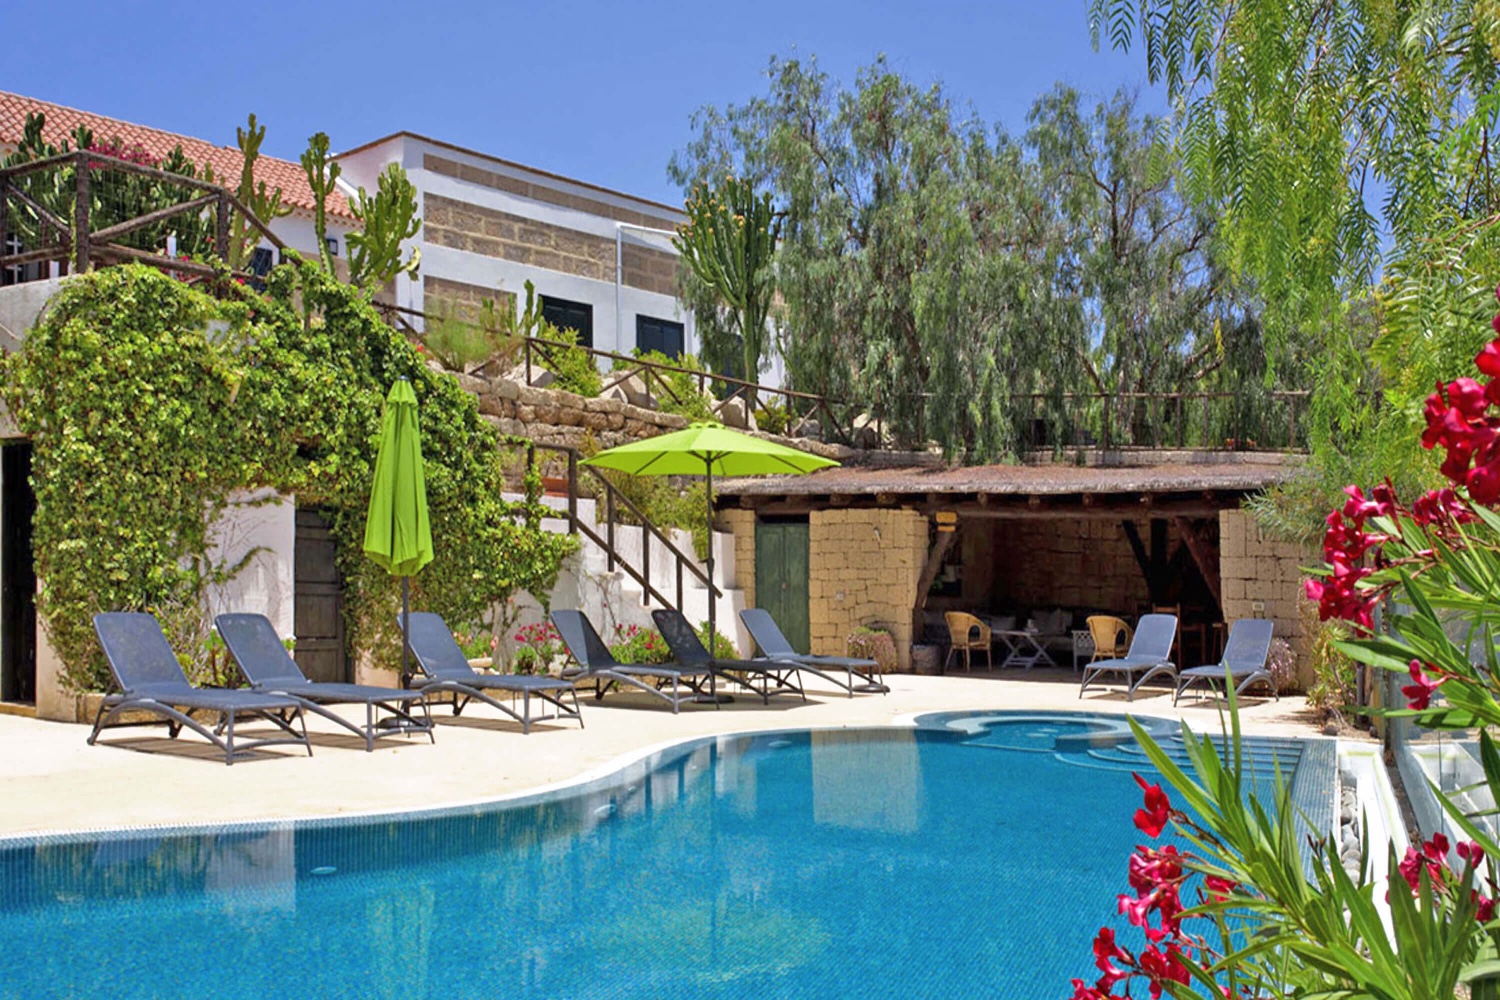 Sommerhus på en gård med stor fælles pool område for en rolig ferie i Tenerife